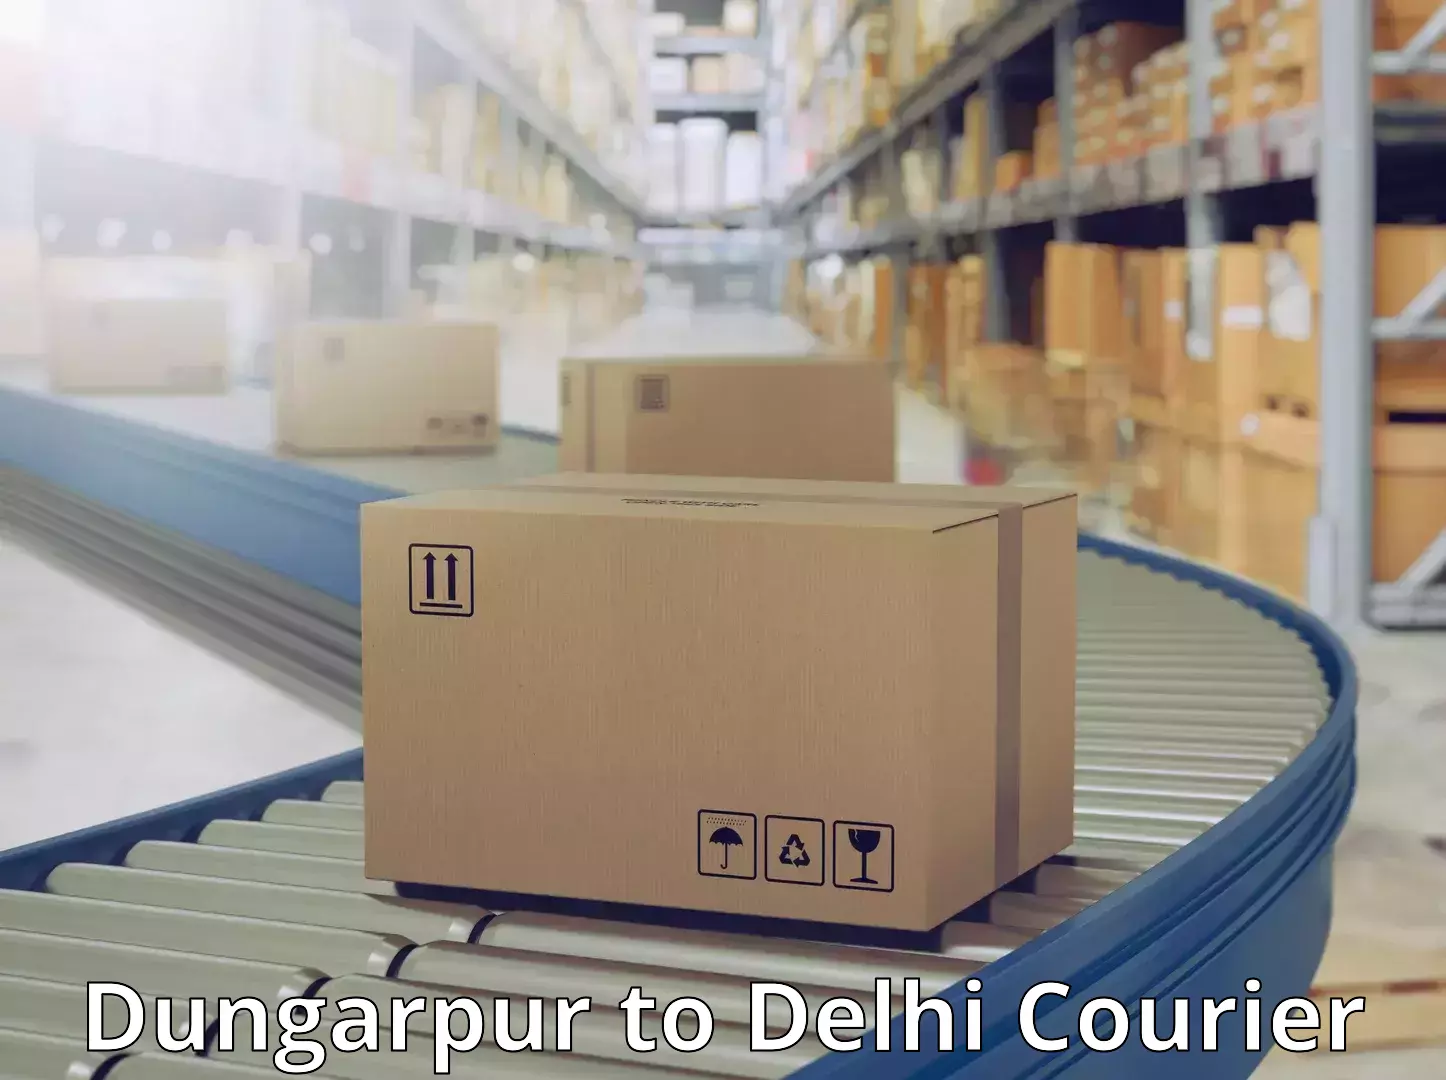 Doorstep delivery service Dungarpur to Delhi